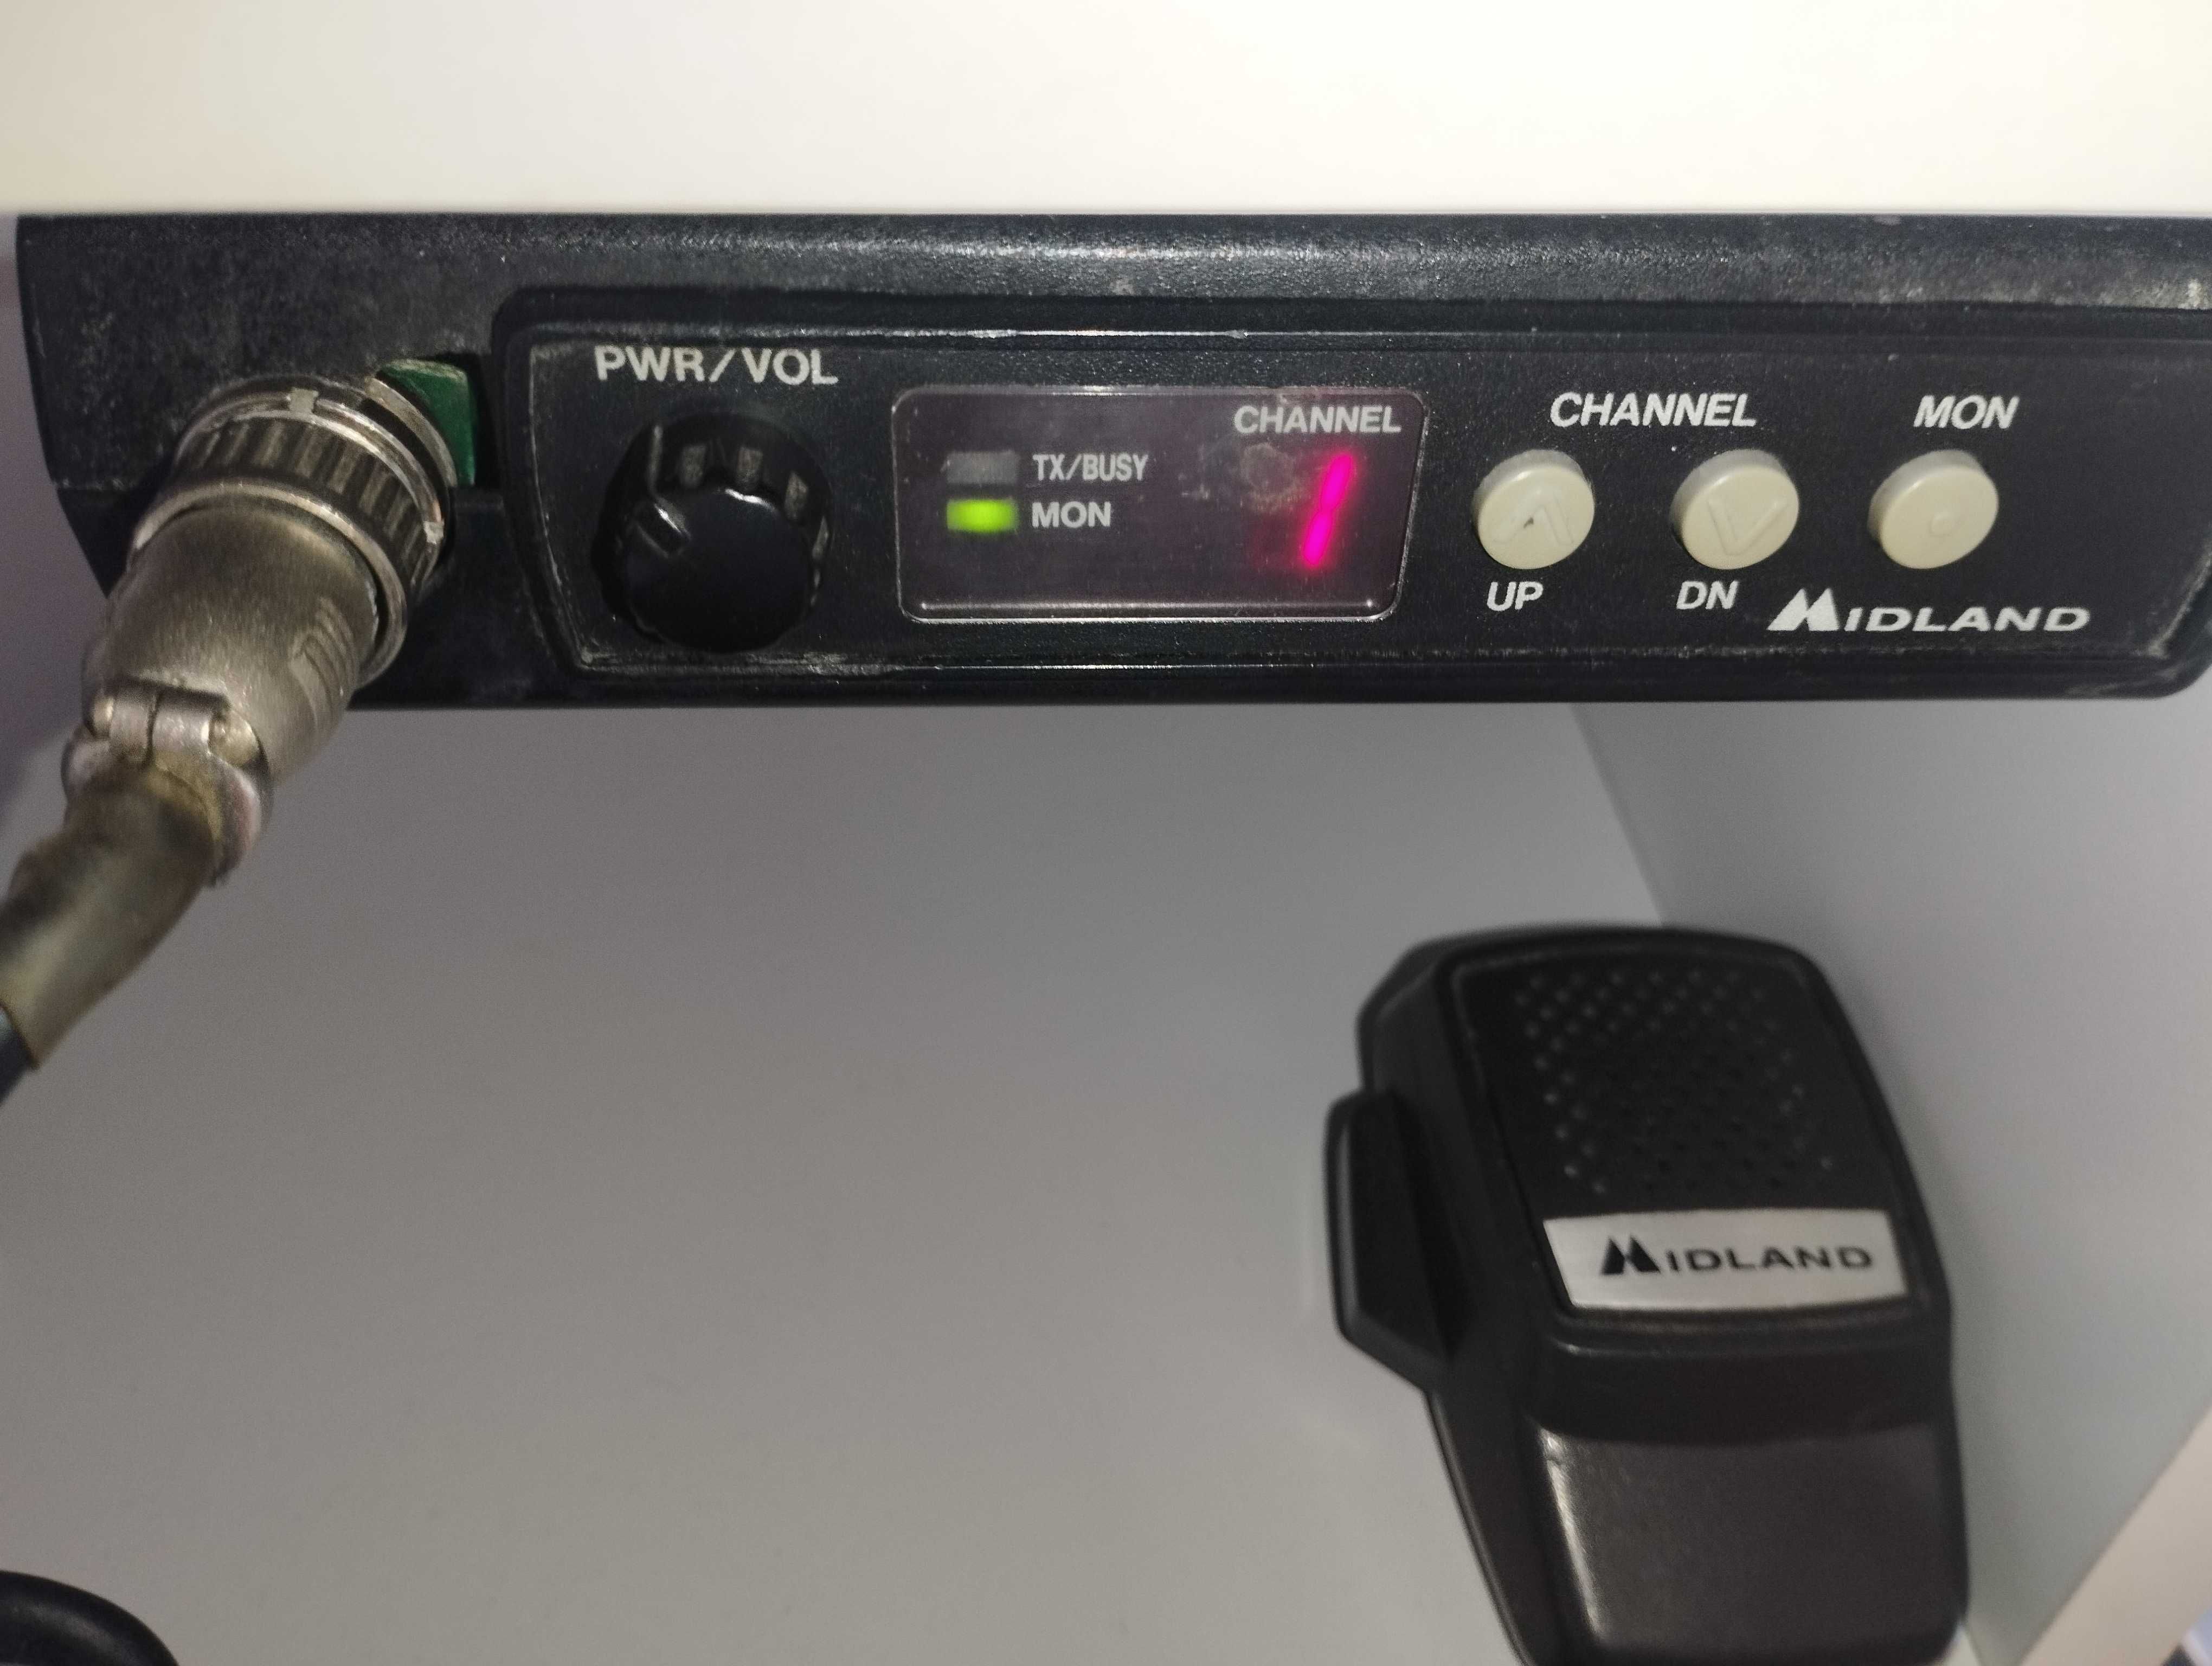 Radiostacja transceiver Midland LMR 70-1066B pasmo 70MHz 4m FM